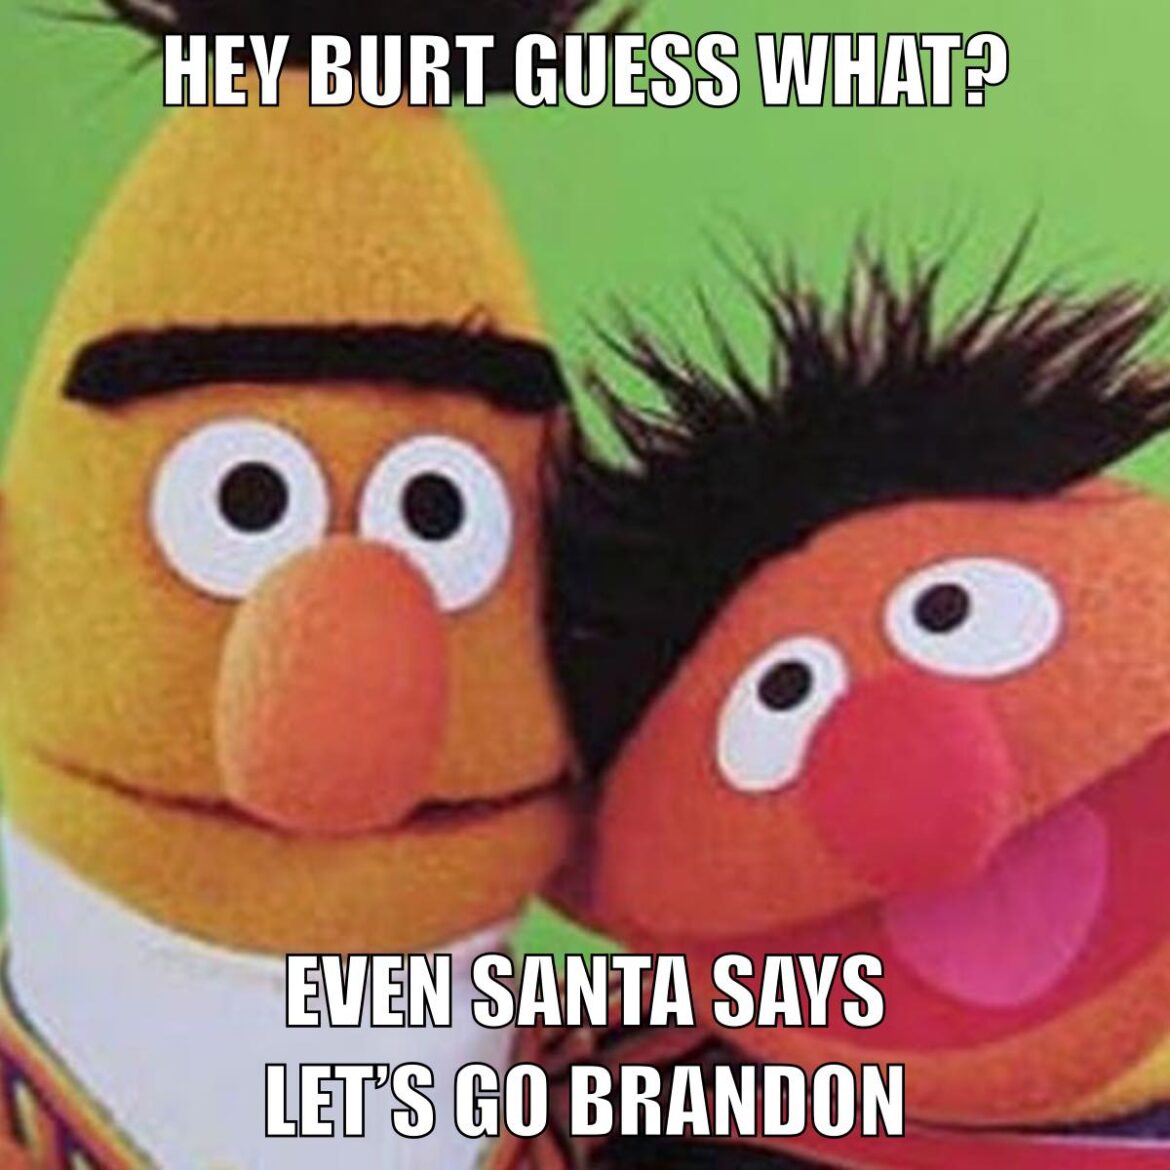 Even Santa Say “Let’s Go Brandon”